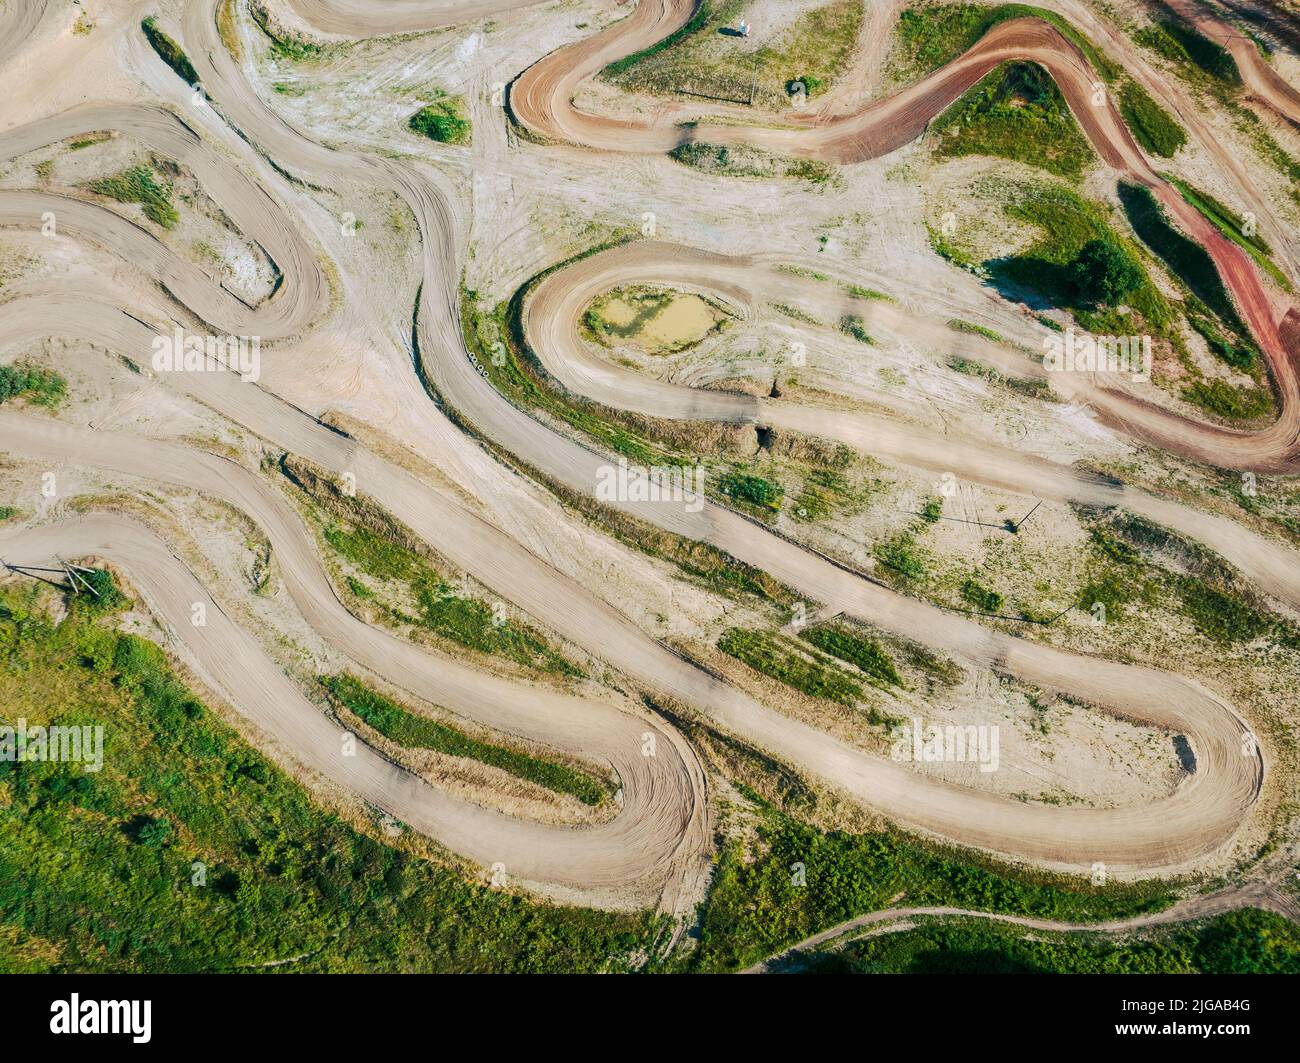 Piste de motocross au milieu d'une campagne verdoyante. Vue aérienne. Banque D'Images